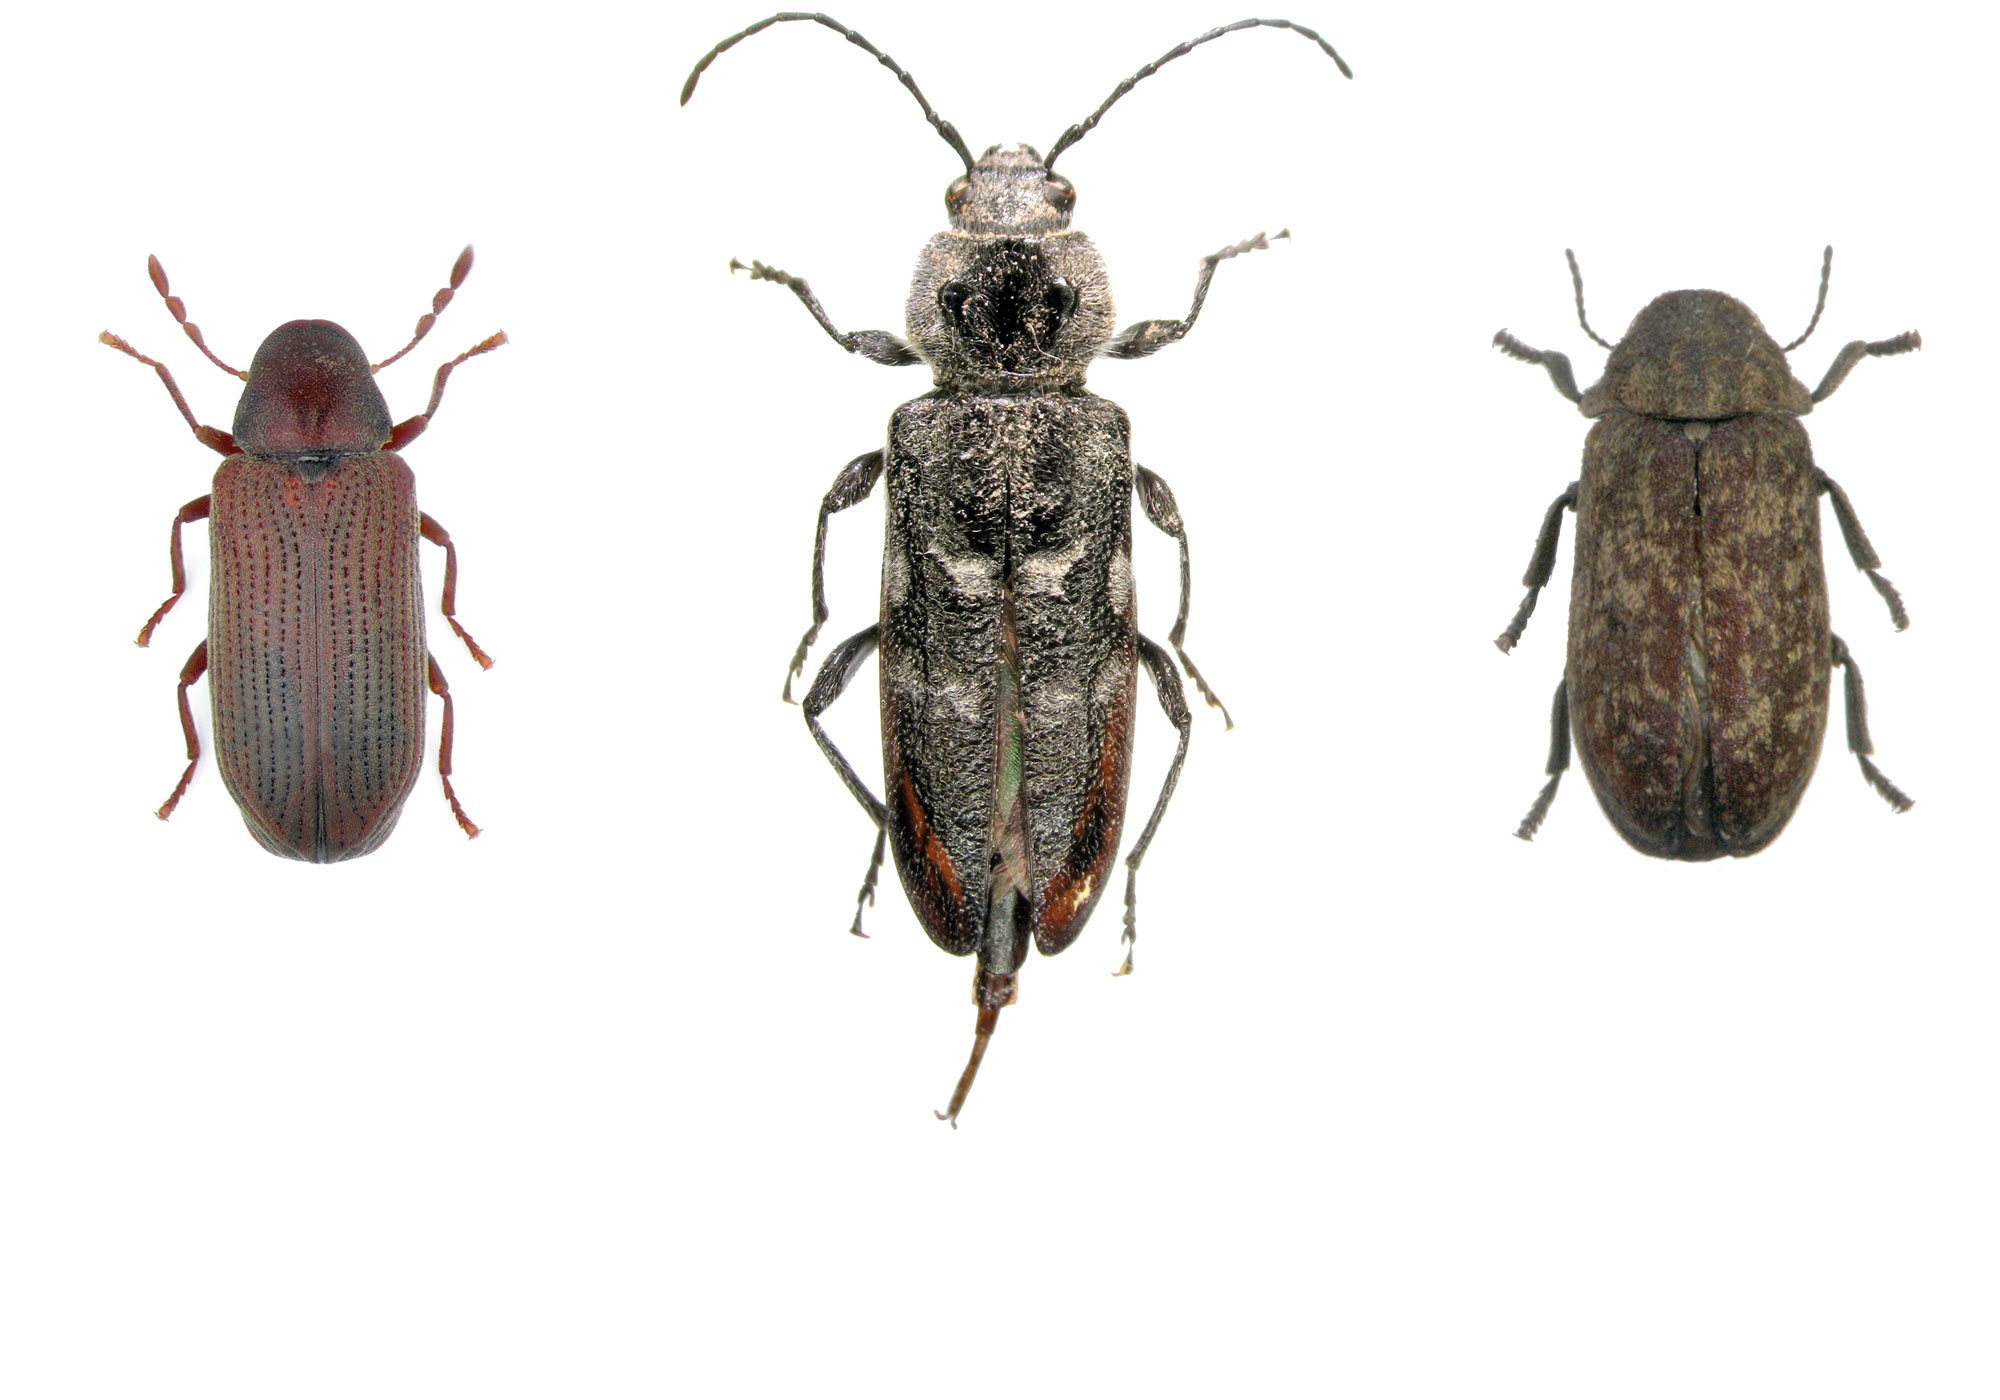 De drie belangrijkste houtaantastende insecten, v.l.n.r. <br/>1. Anobium punctatum, de houtworm;<br/>2. Hylotrupes bajulus, de huisboktor; <br/>3. Xestobium rufovillosum, de bonte knaagkever